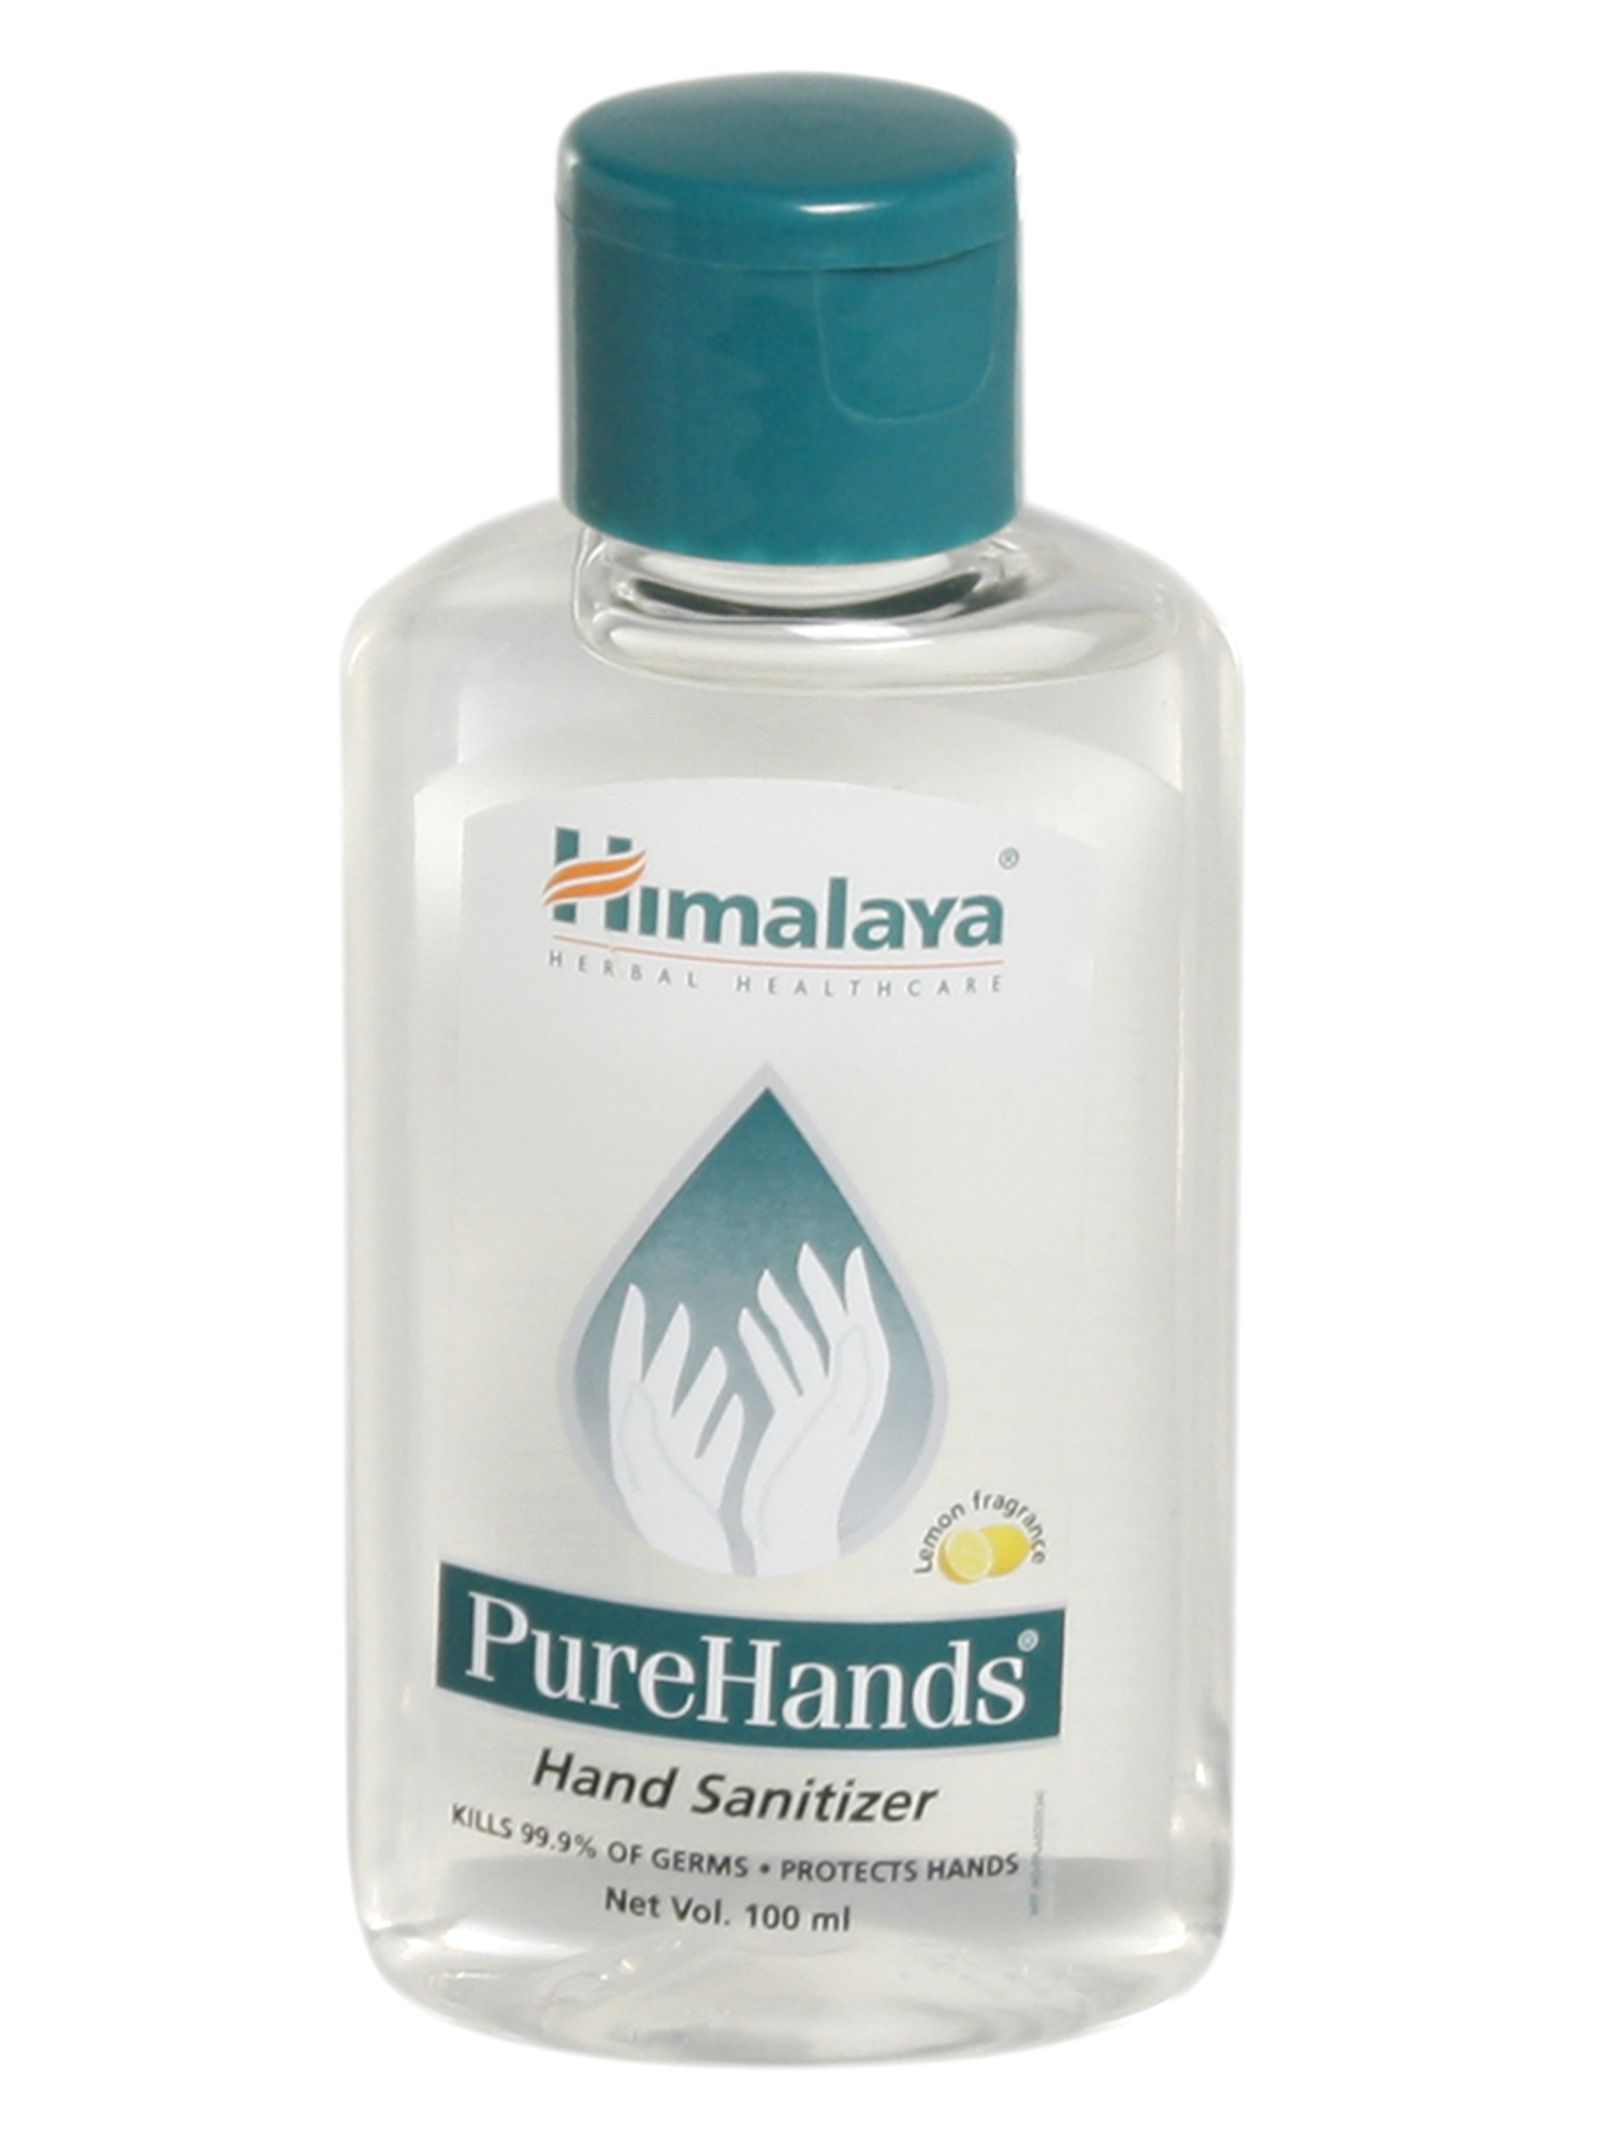 Himalaya - PureHands (Hand Sanitizer)